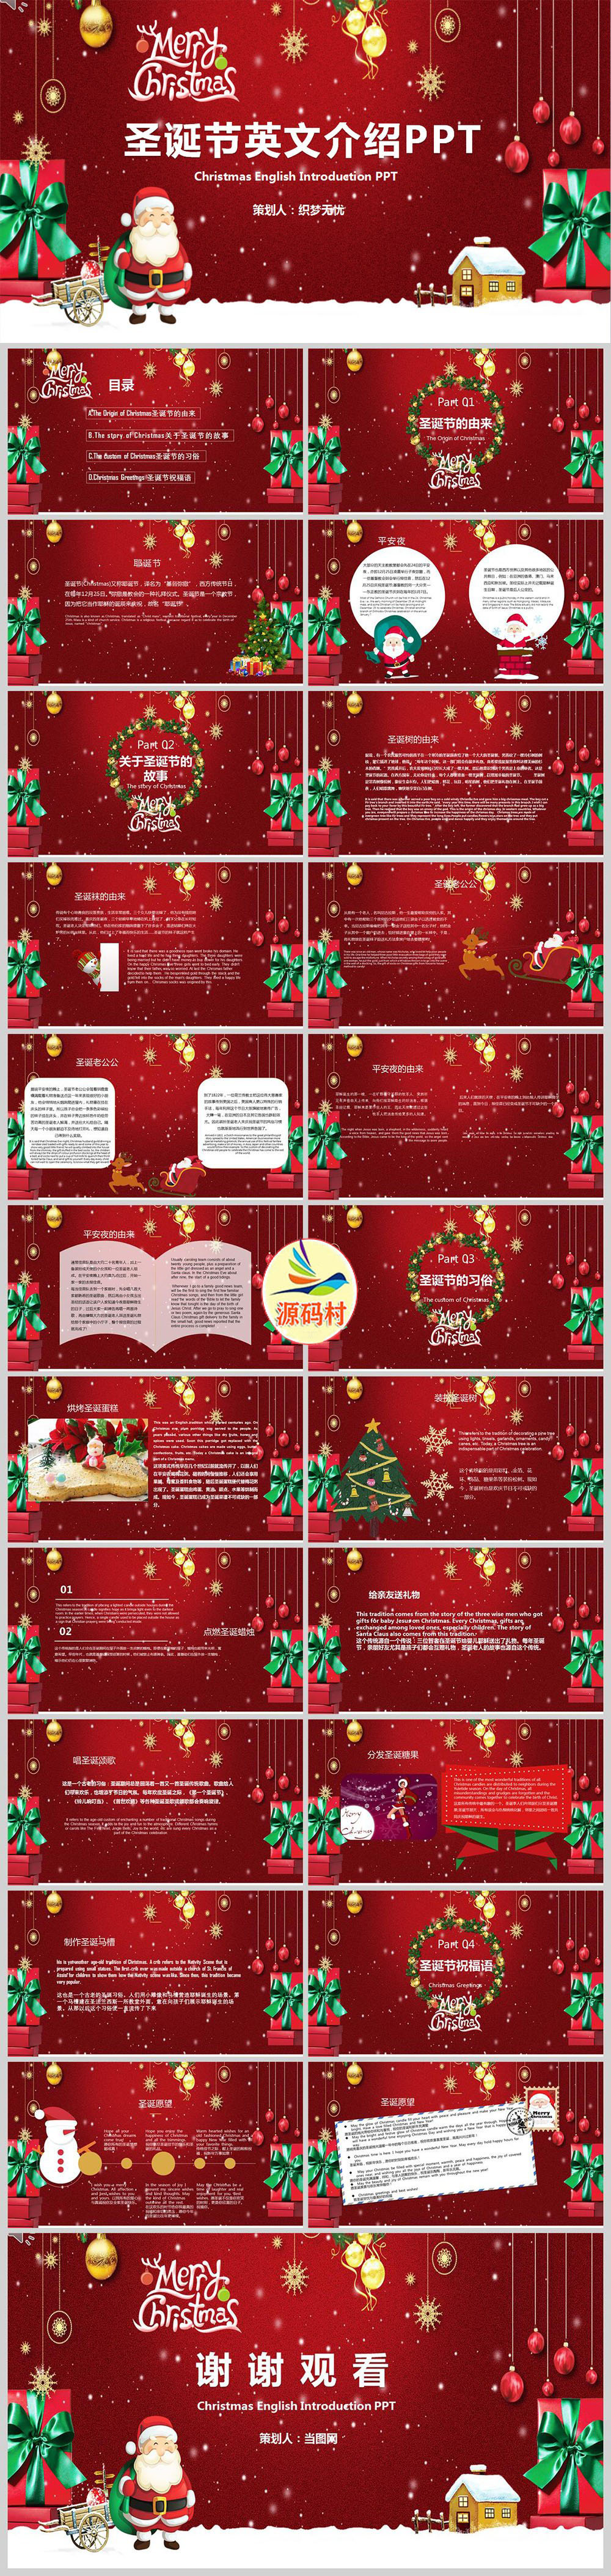 红色圣诞节节日英文介绍PPT模板下载